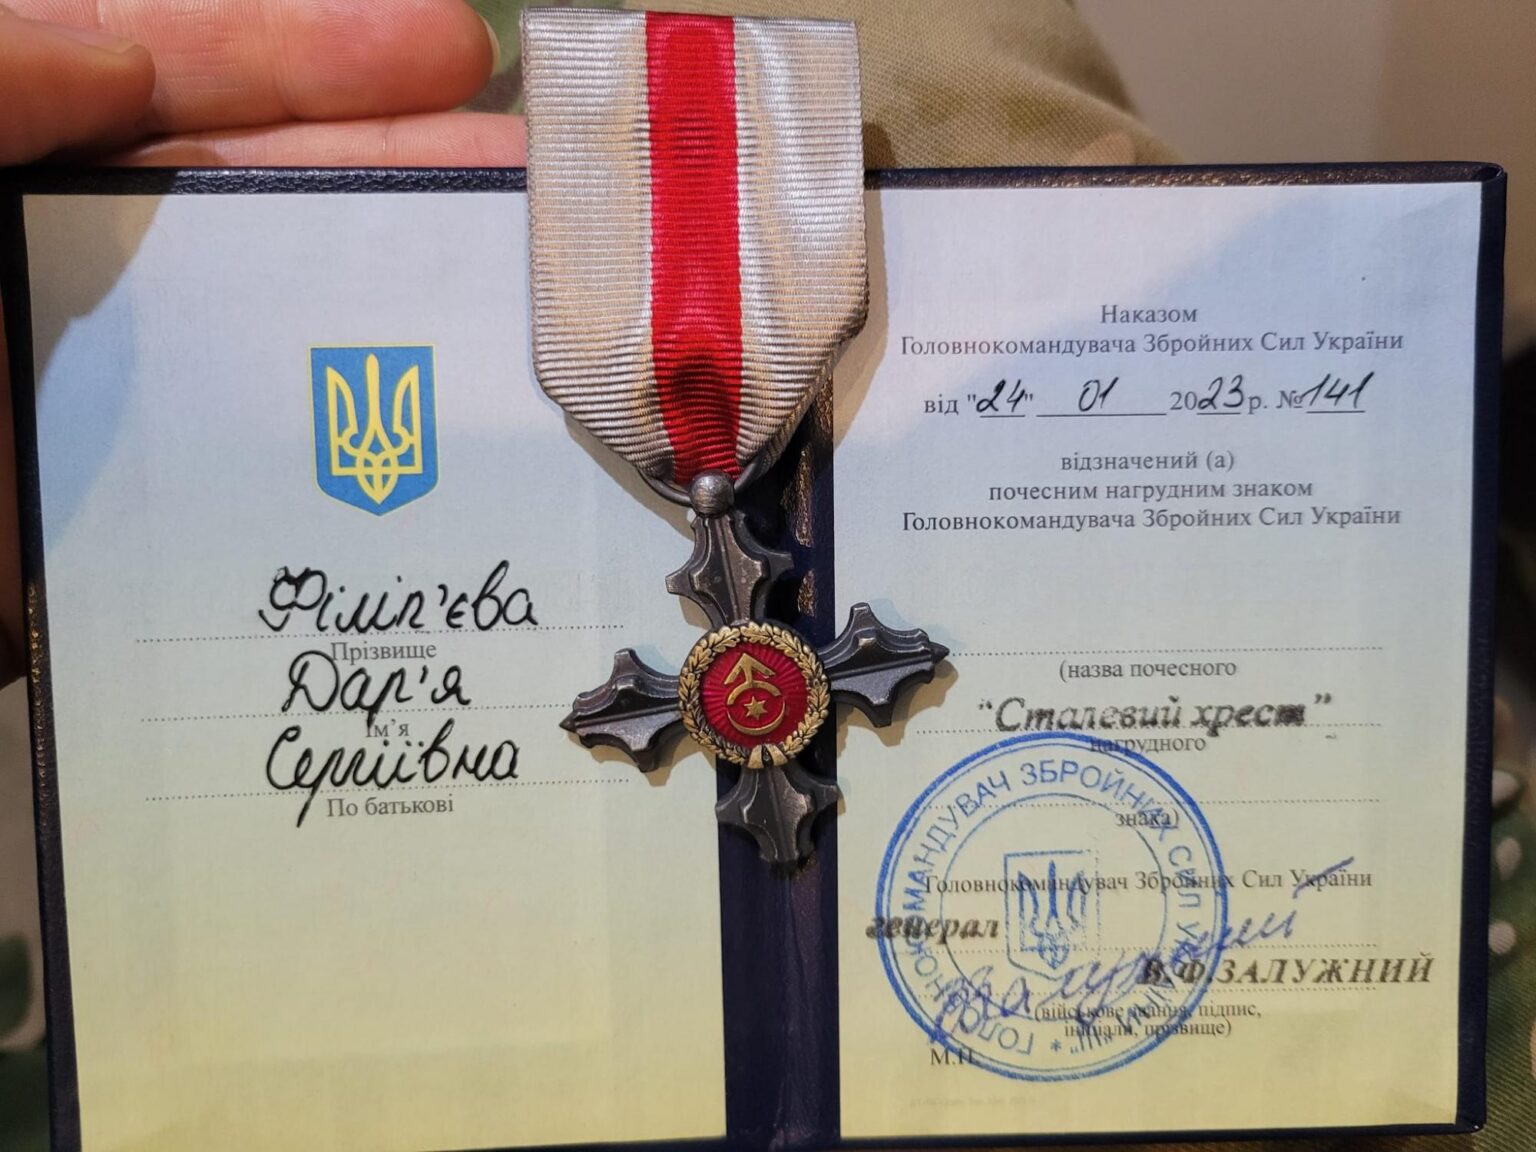 Дар'я Філіп'єва отрмала нагороду "Сталевий хрест"